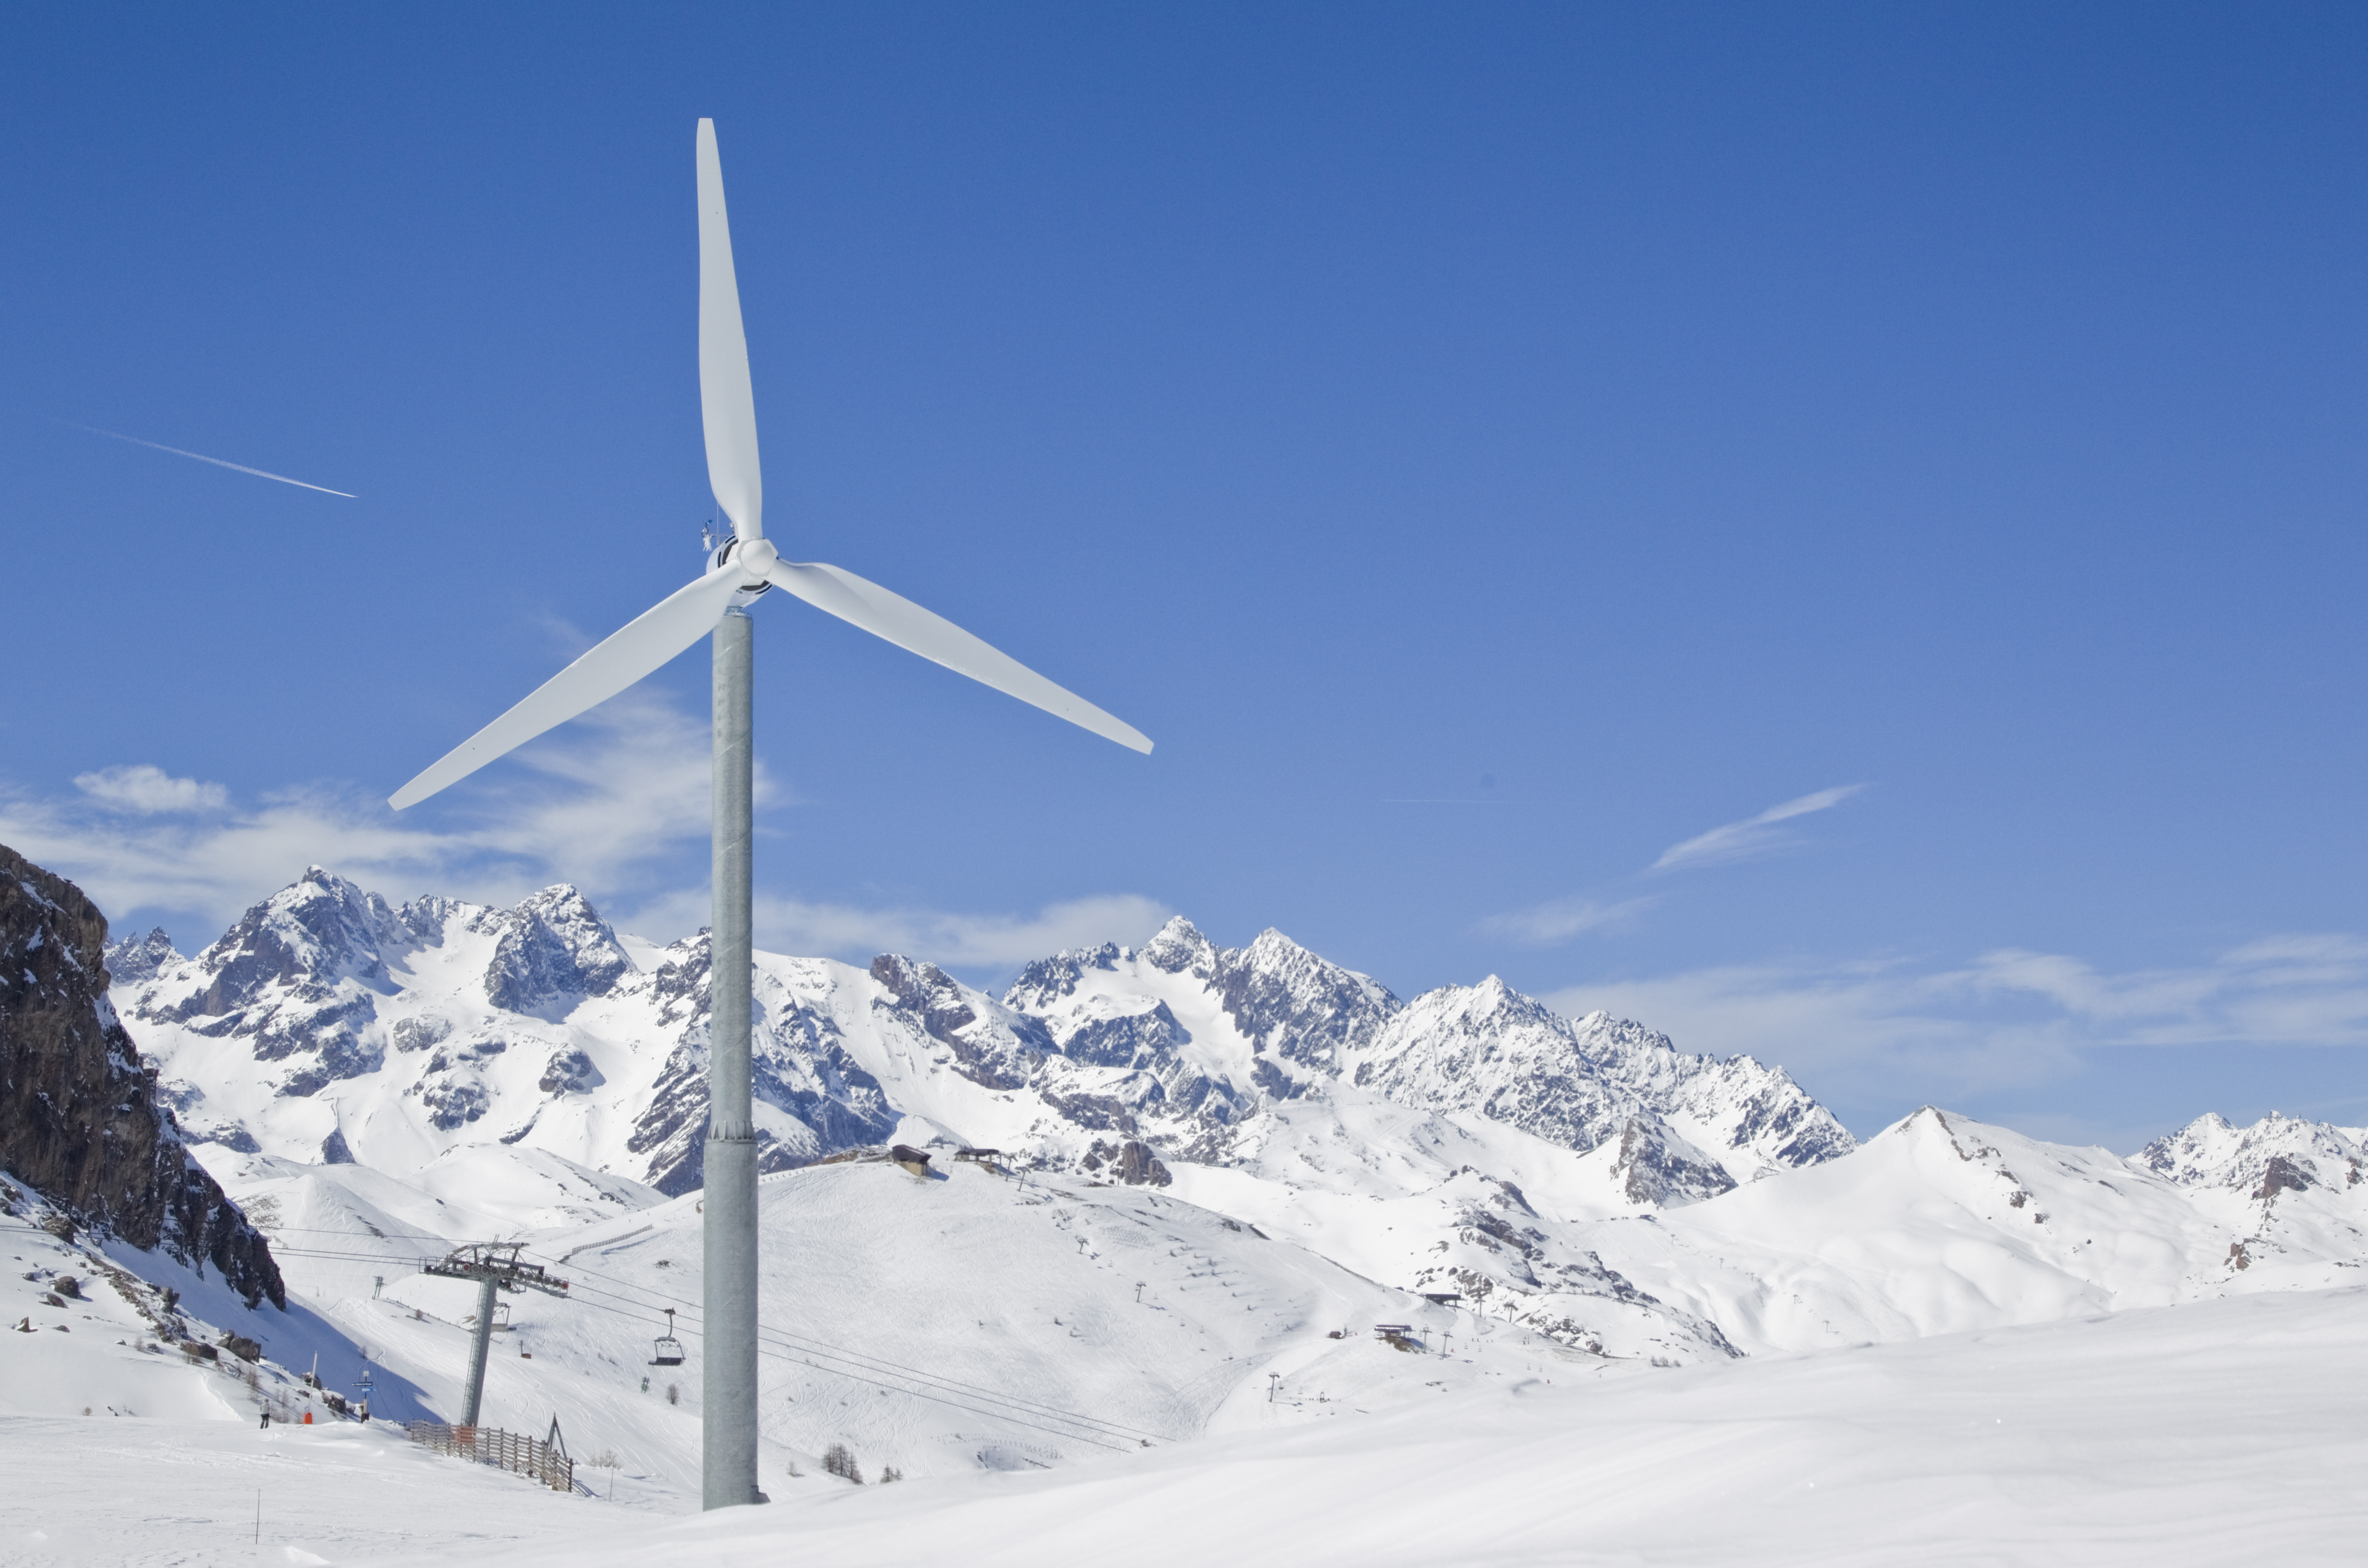 La station de ski Serre Chevalier produit sa propre électricité